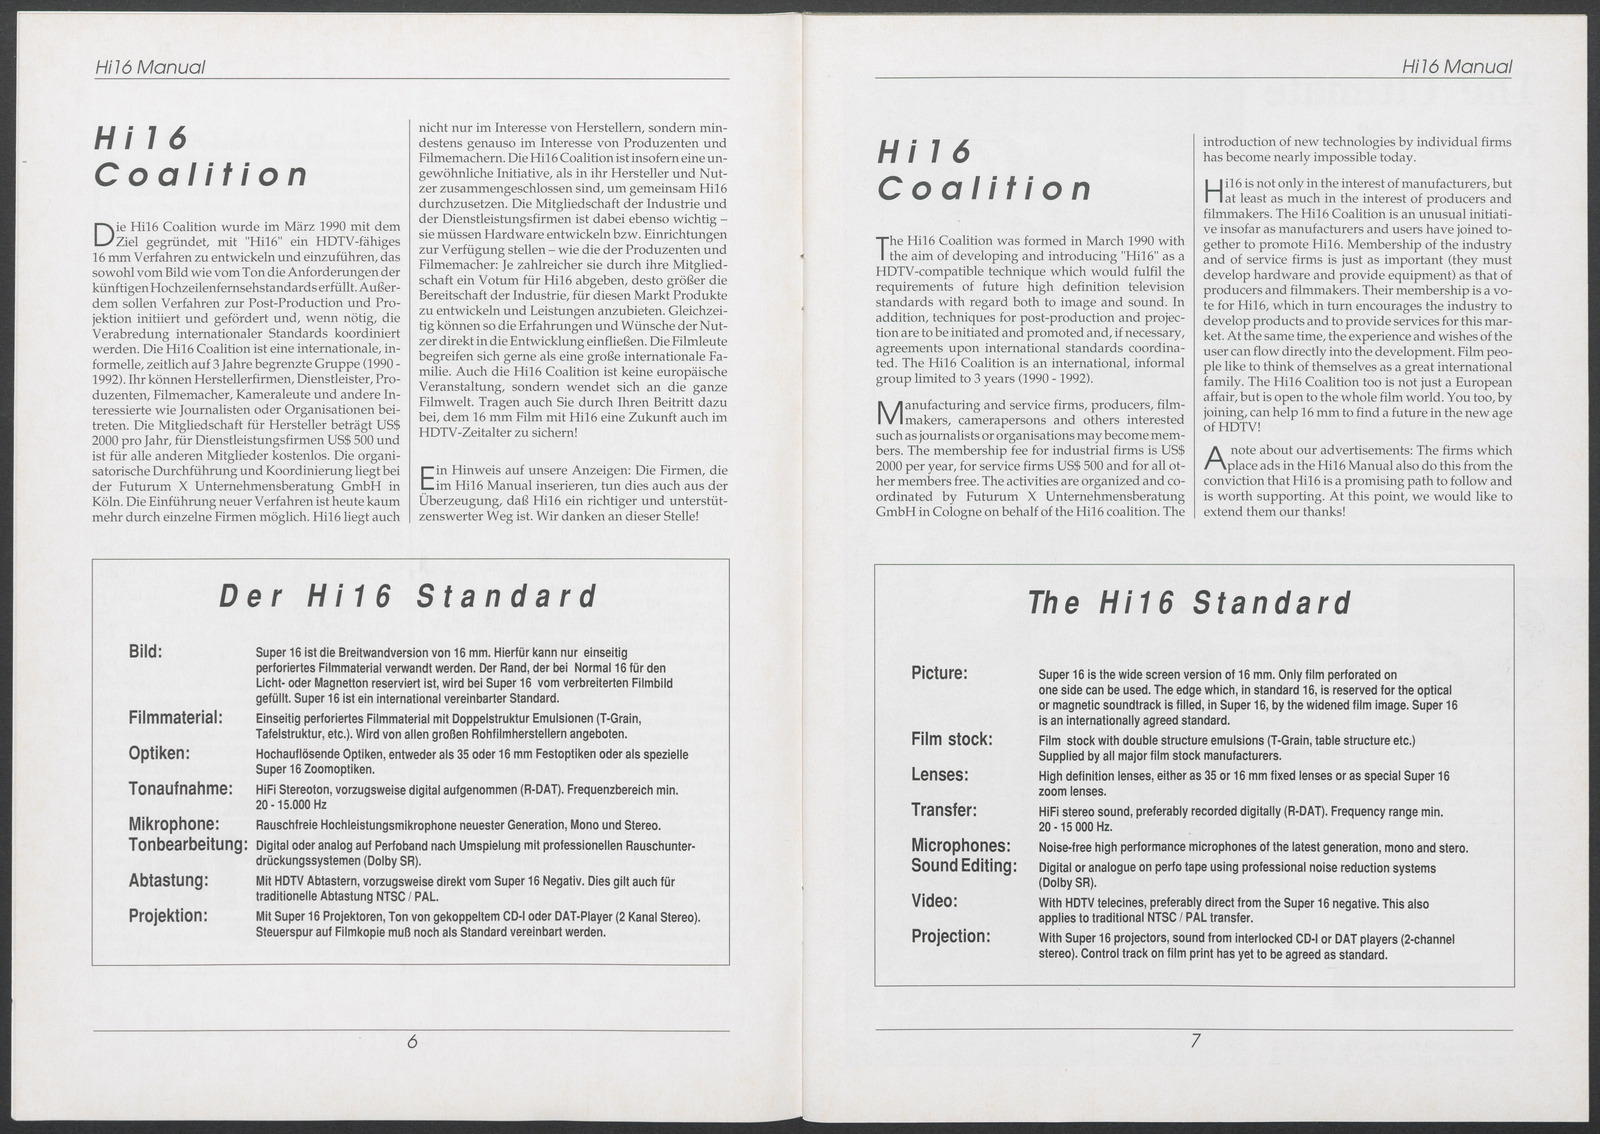 Hi16 Manual (1990), Seiten 6 und 7